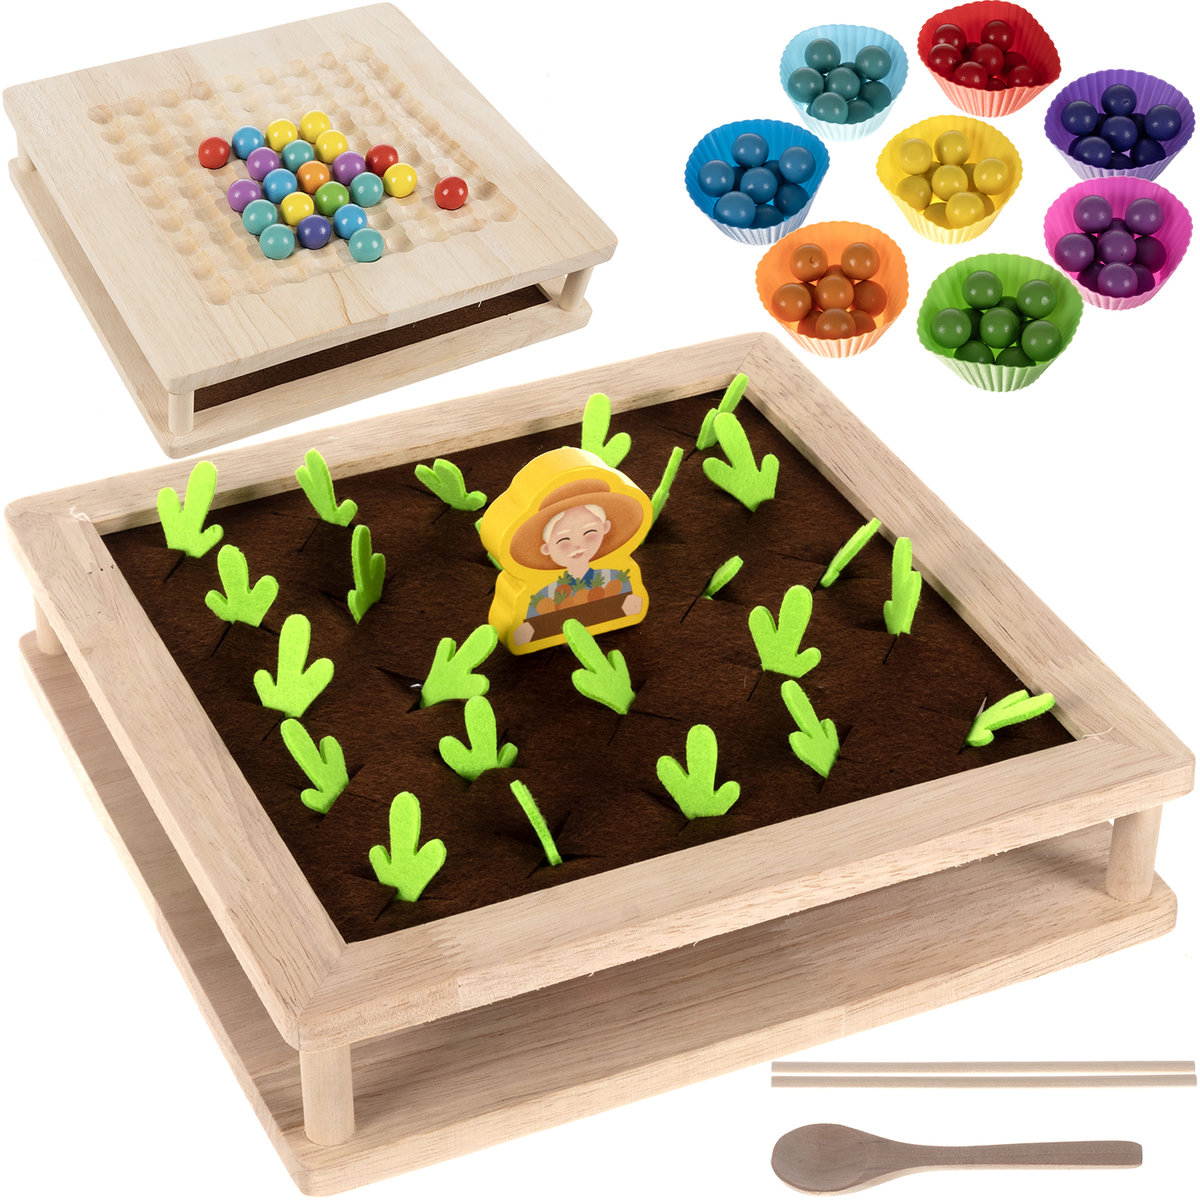 Gra Memory Farma Pamięciowa Montessori Układanka dla Dzieci Pamięć Foremki KRUZZEL